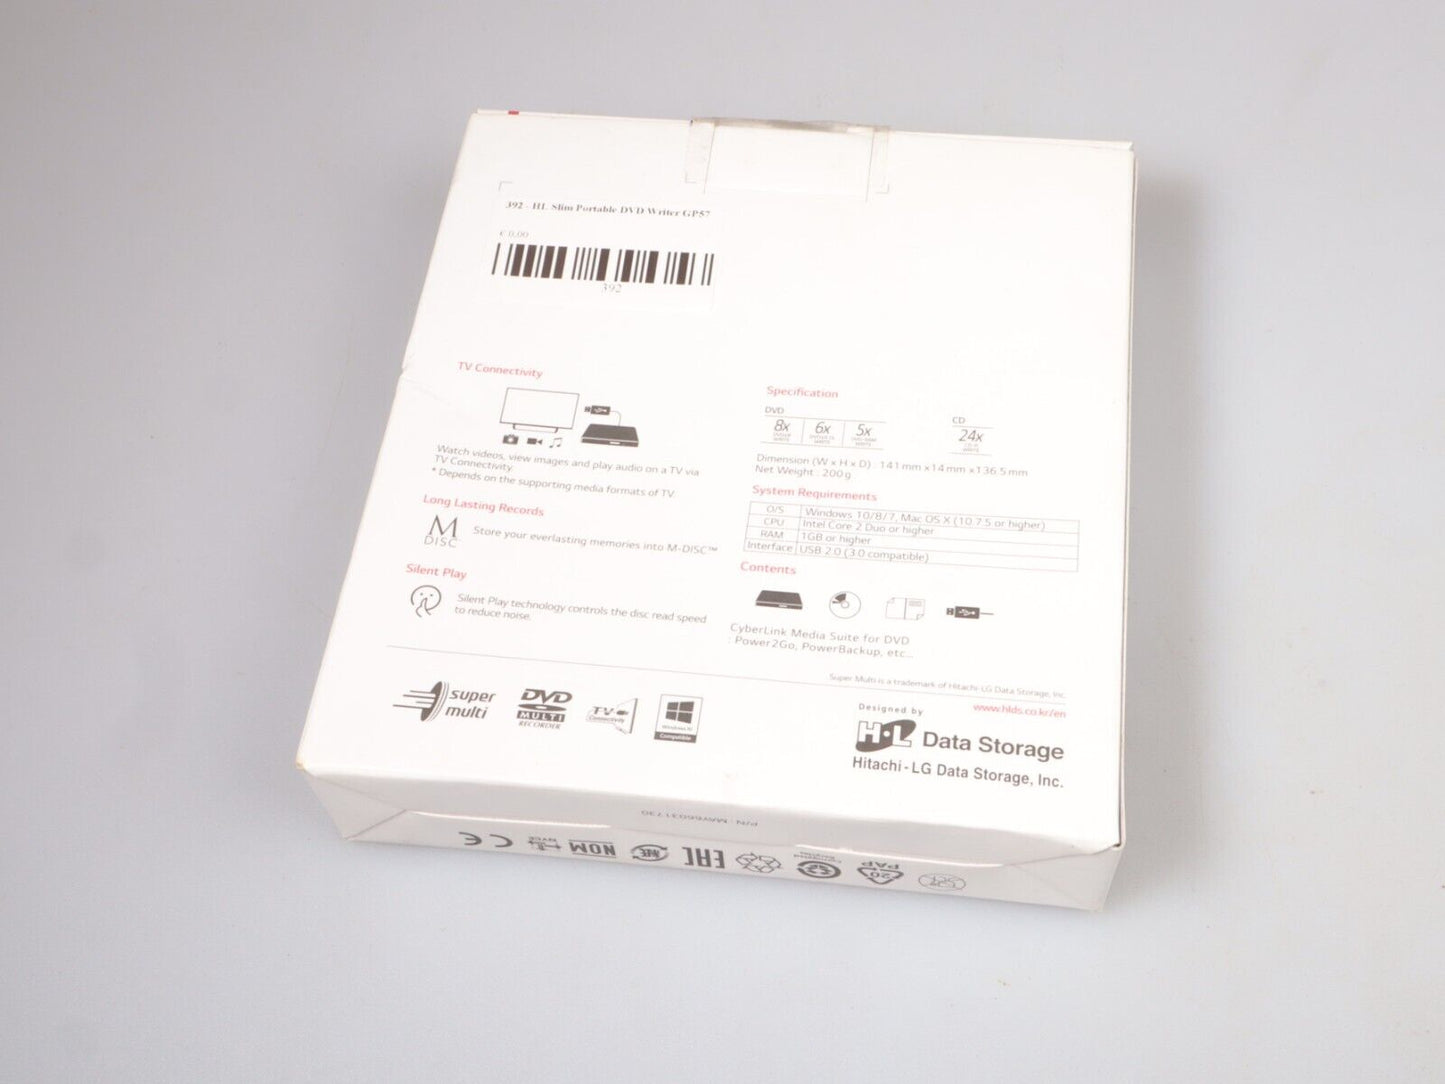 Hitachi-LG GP57 External DVD Drive | Slim Portable DVD Player